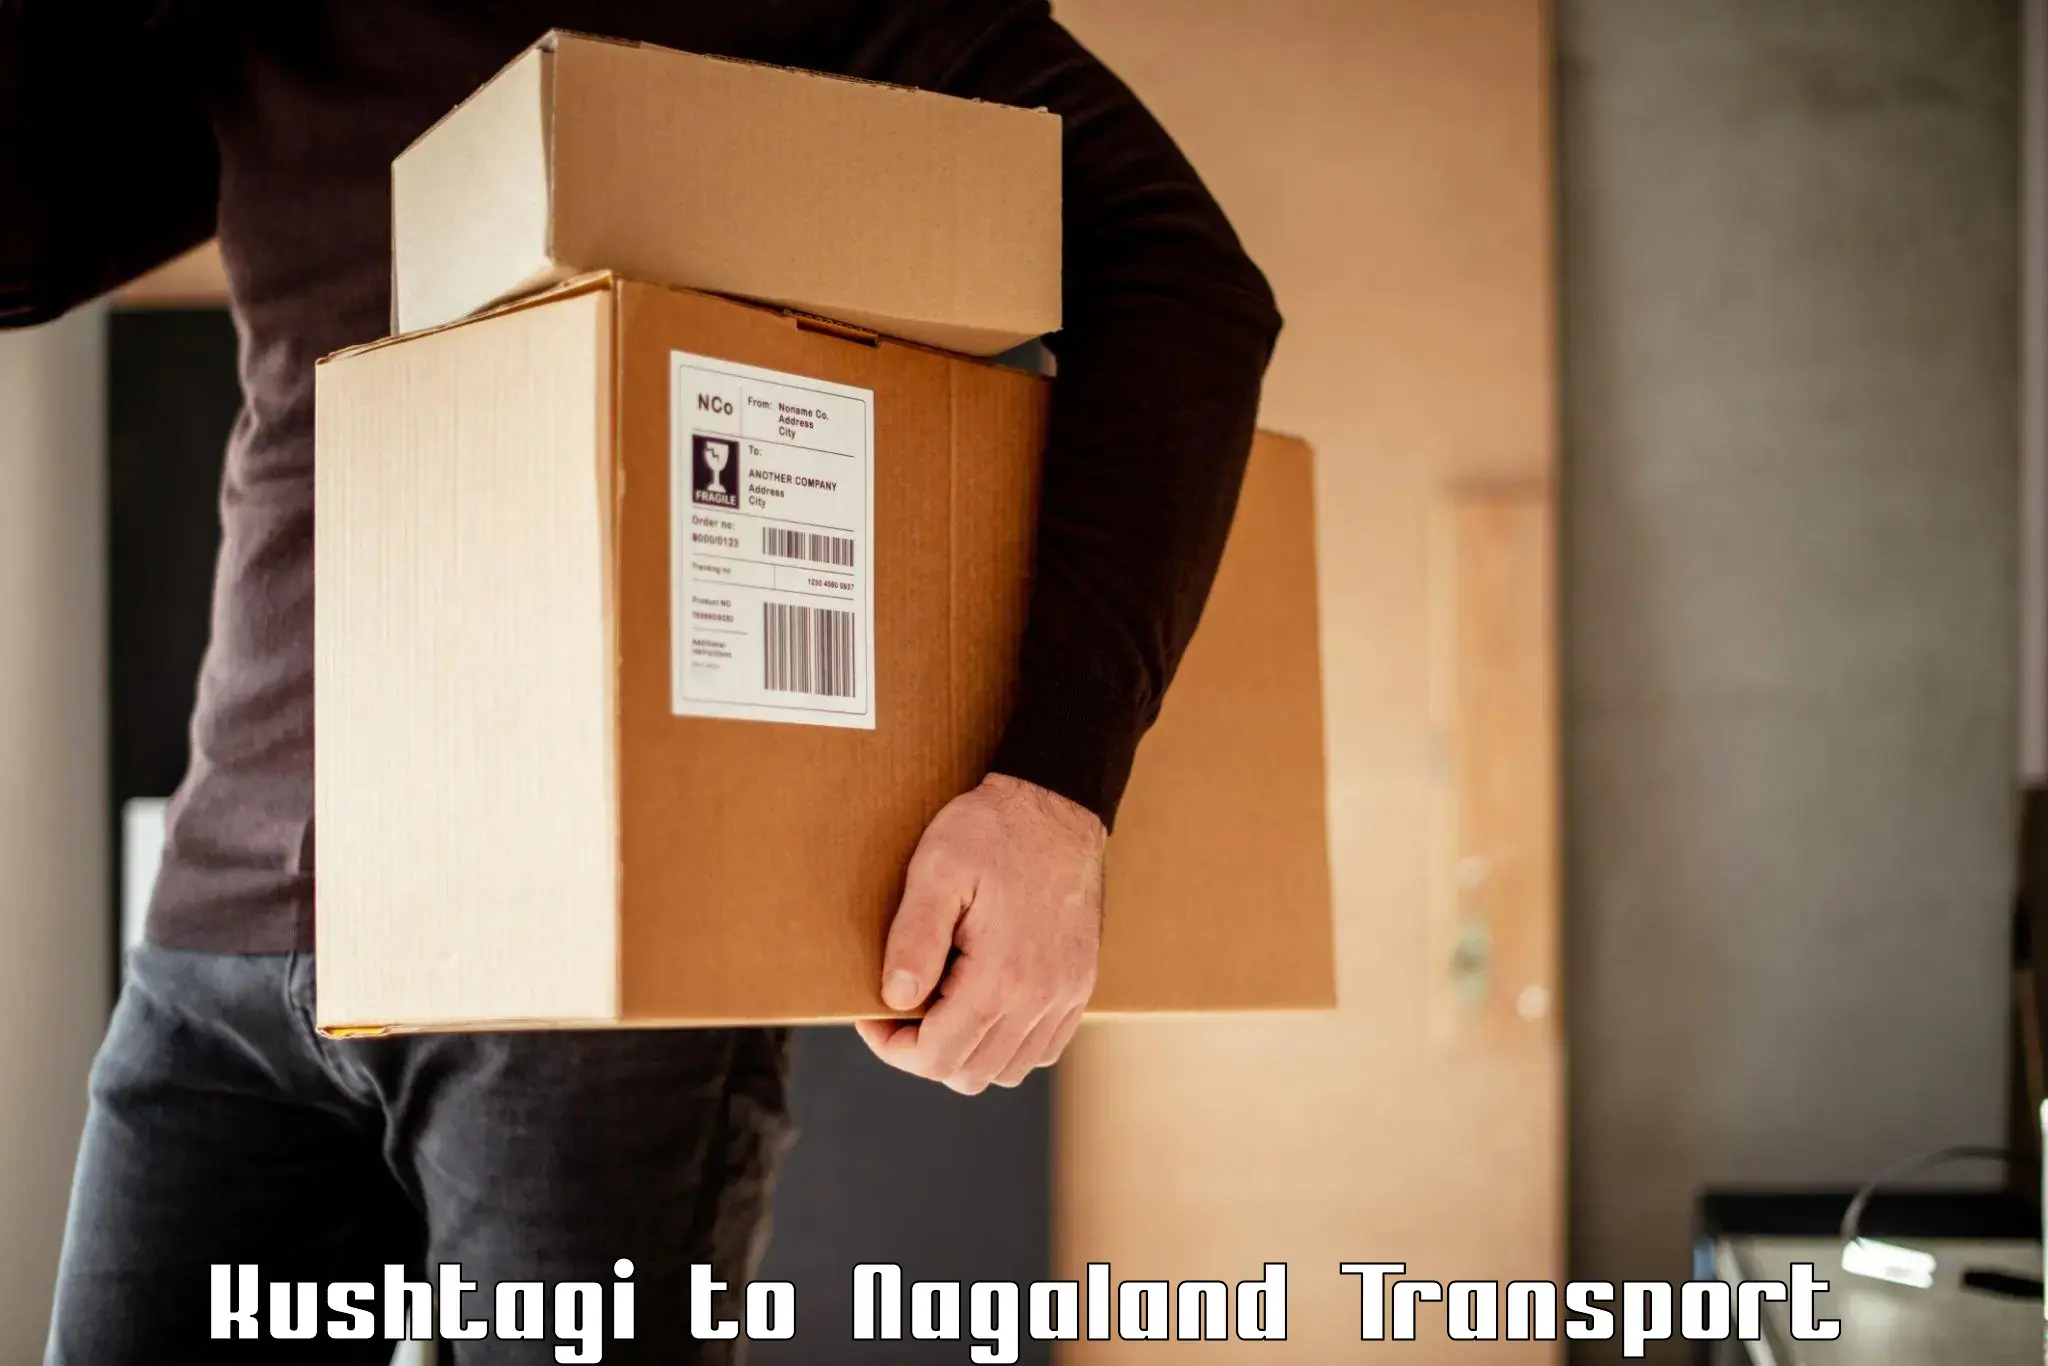 Shipping partner Kushtagi to Nagaland